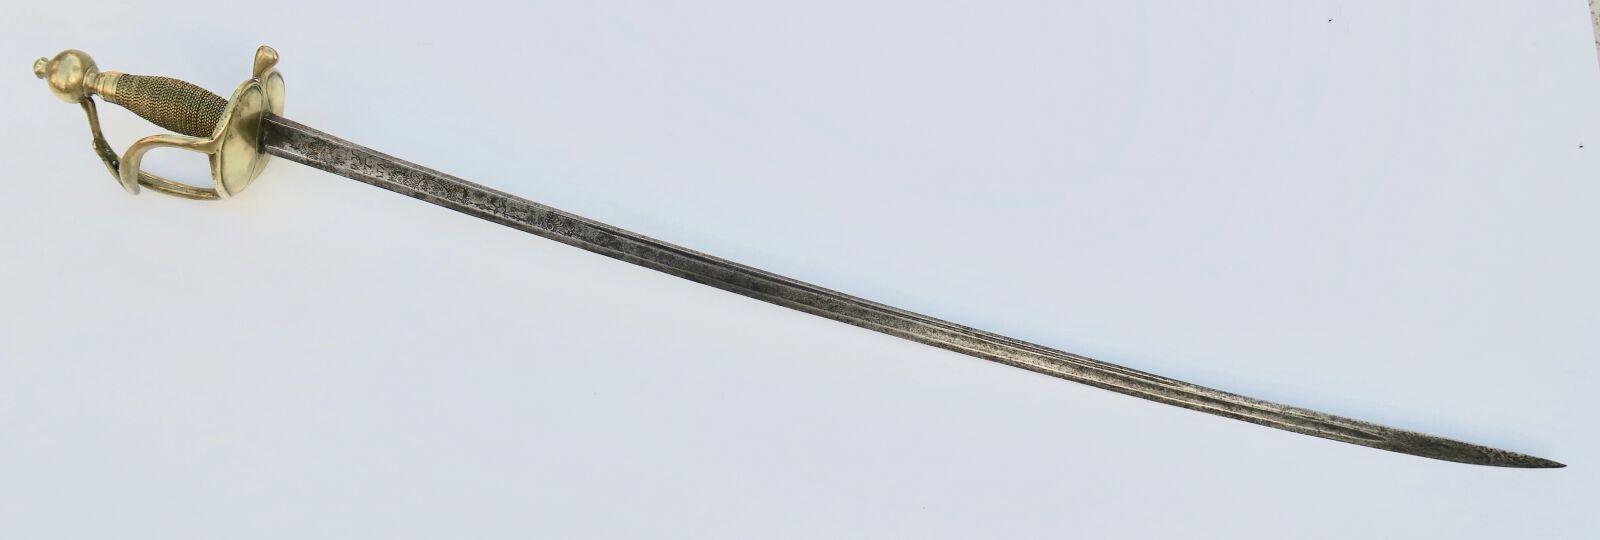 Null 1750型龙形剑。黄铜手柄，双板，圆形鞍座，铜丝，侧枝，刀背，空心曲线和水沟，在法国的武器下刻有 "Vive le roy"，周围有花纹图案。总长10&hellip;